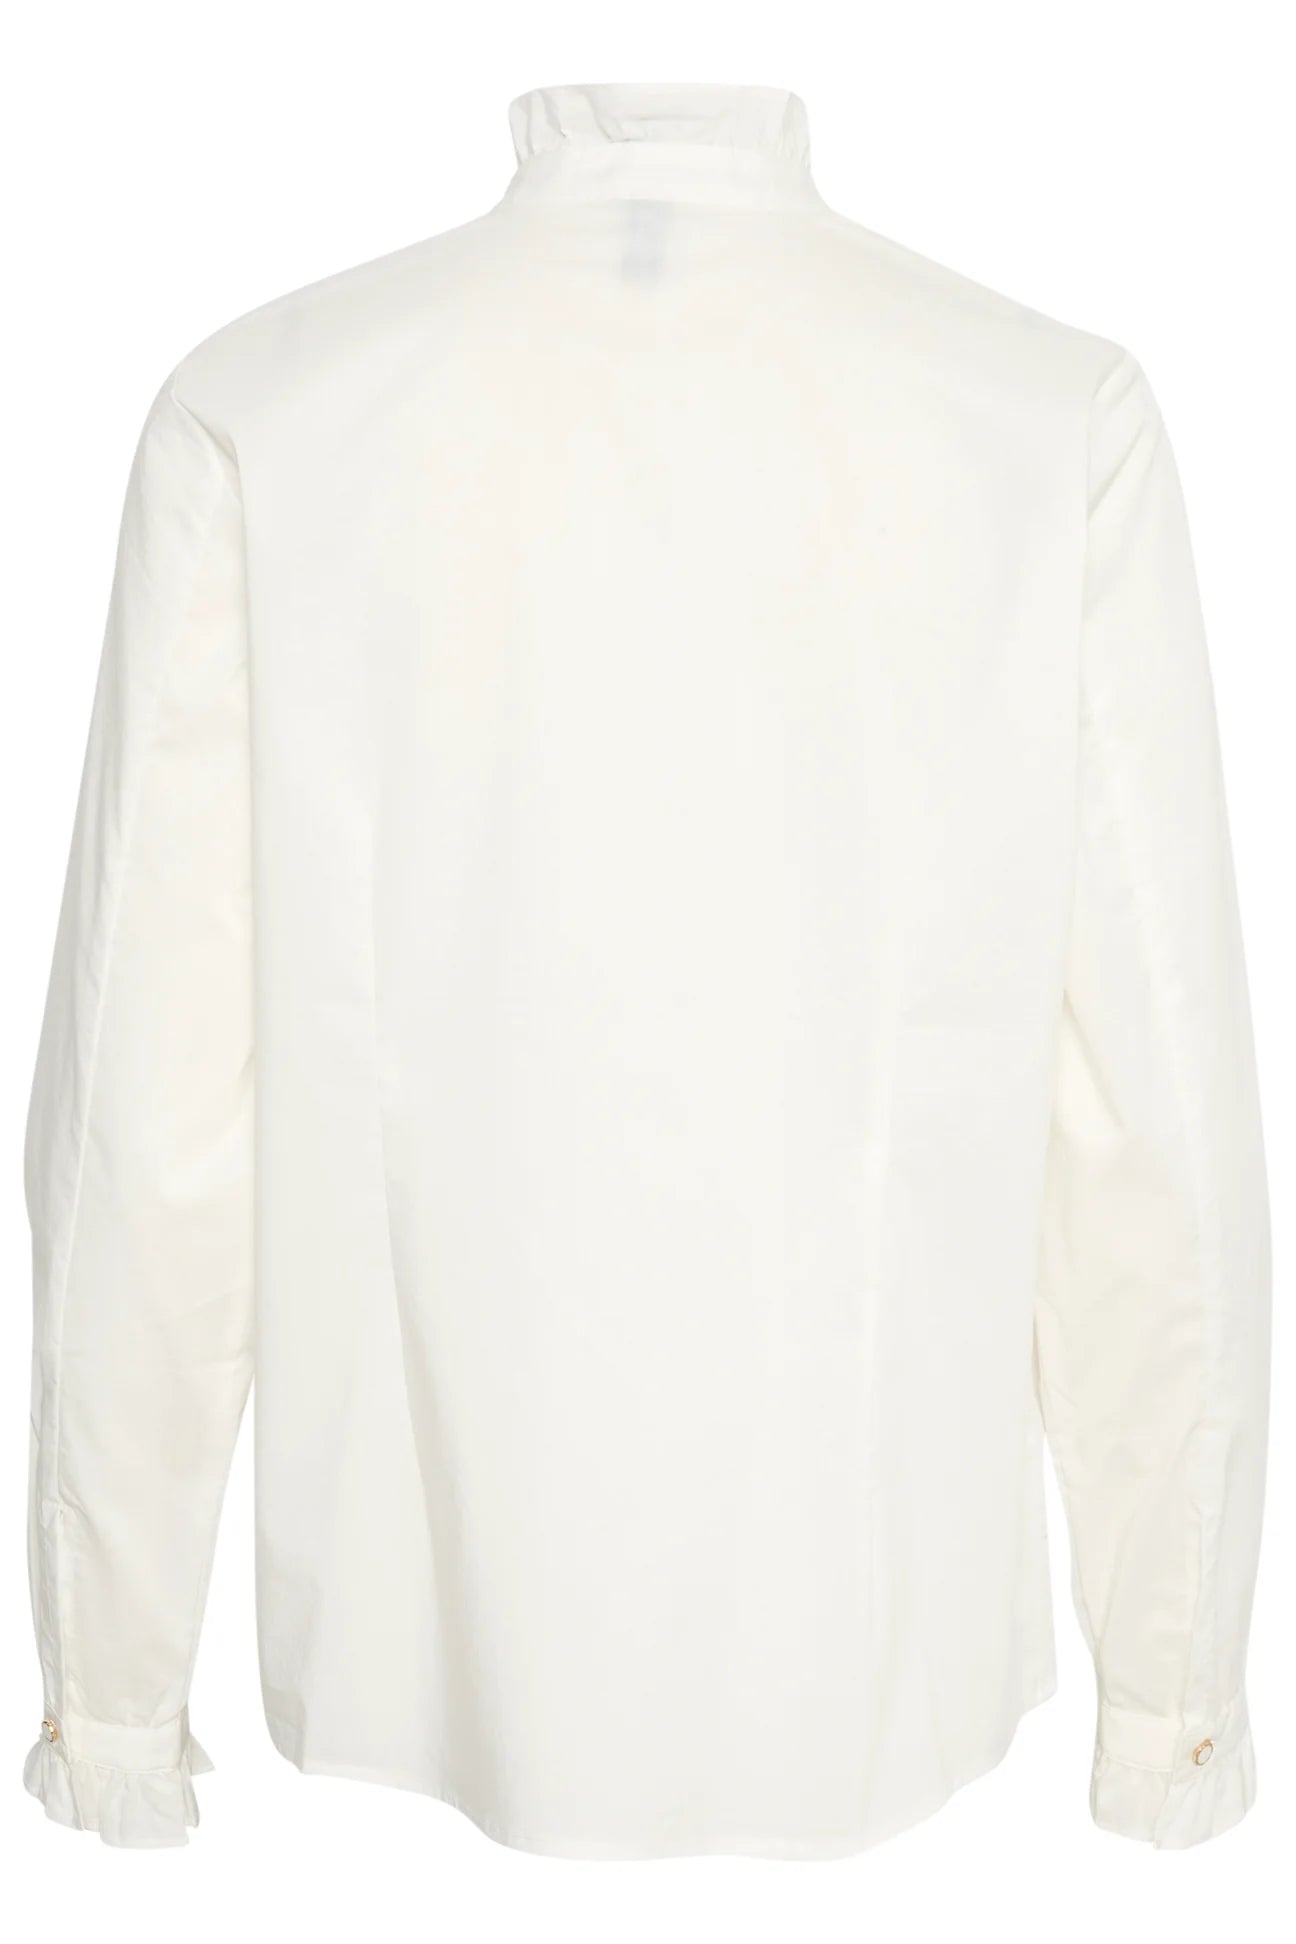 Culture Antoinett Frill Shirt White